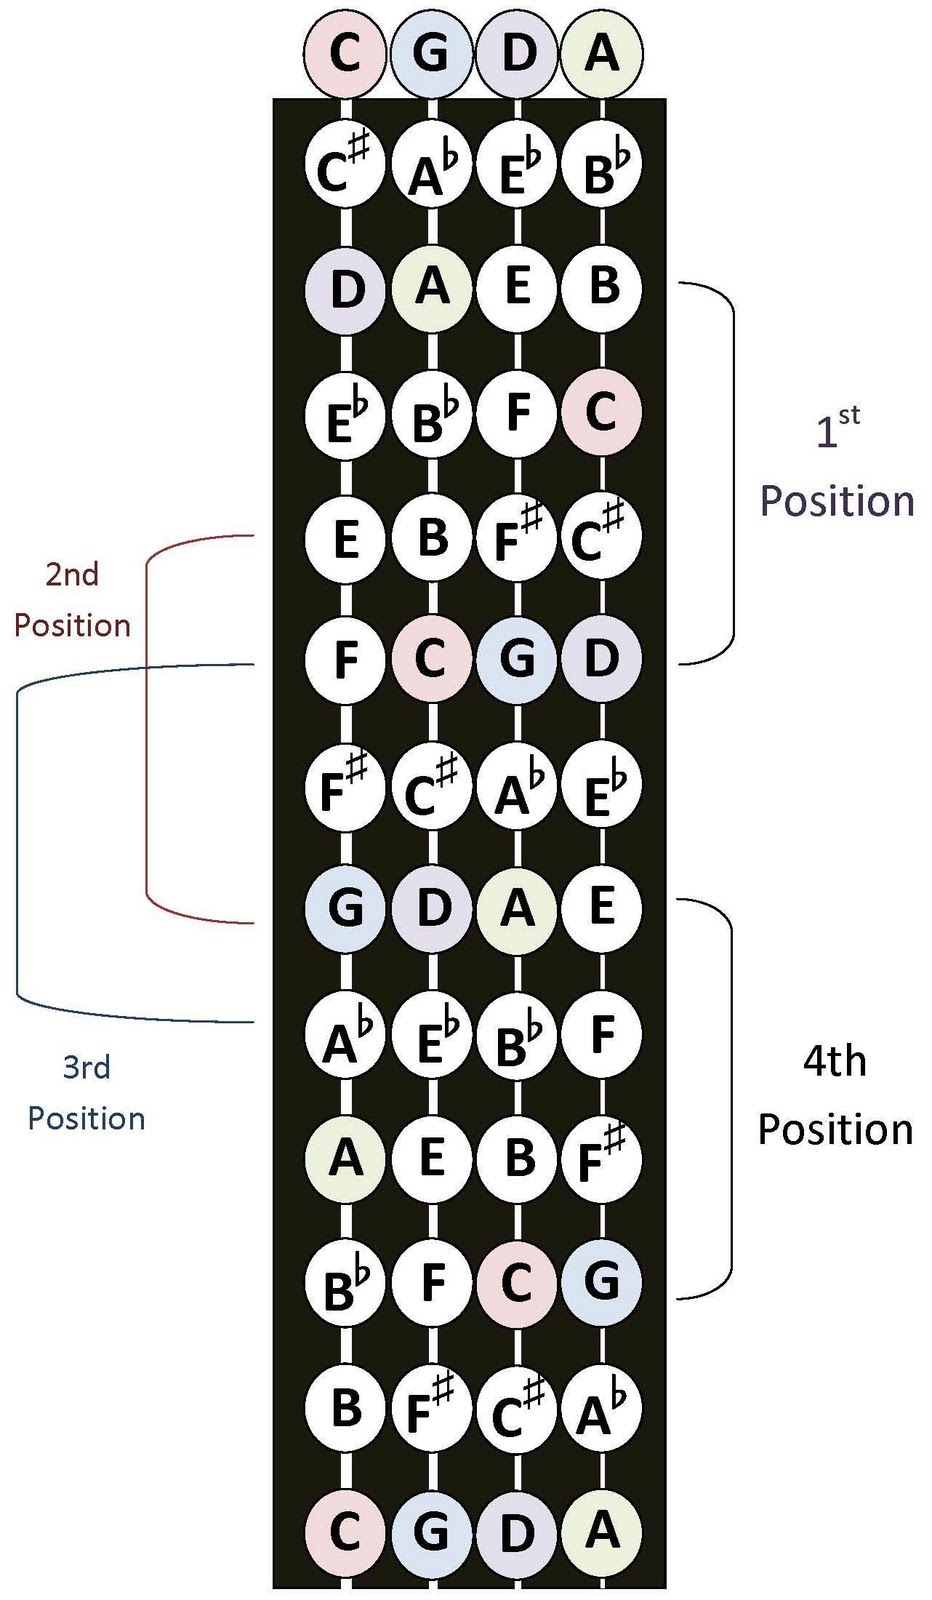 Bass Position Chart